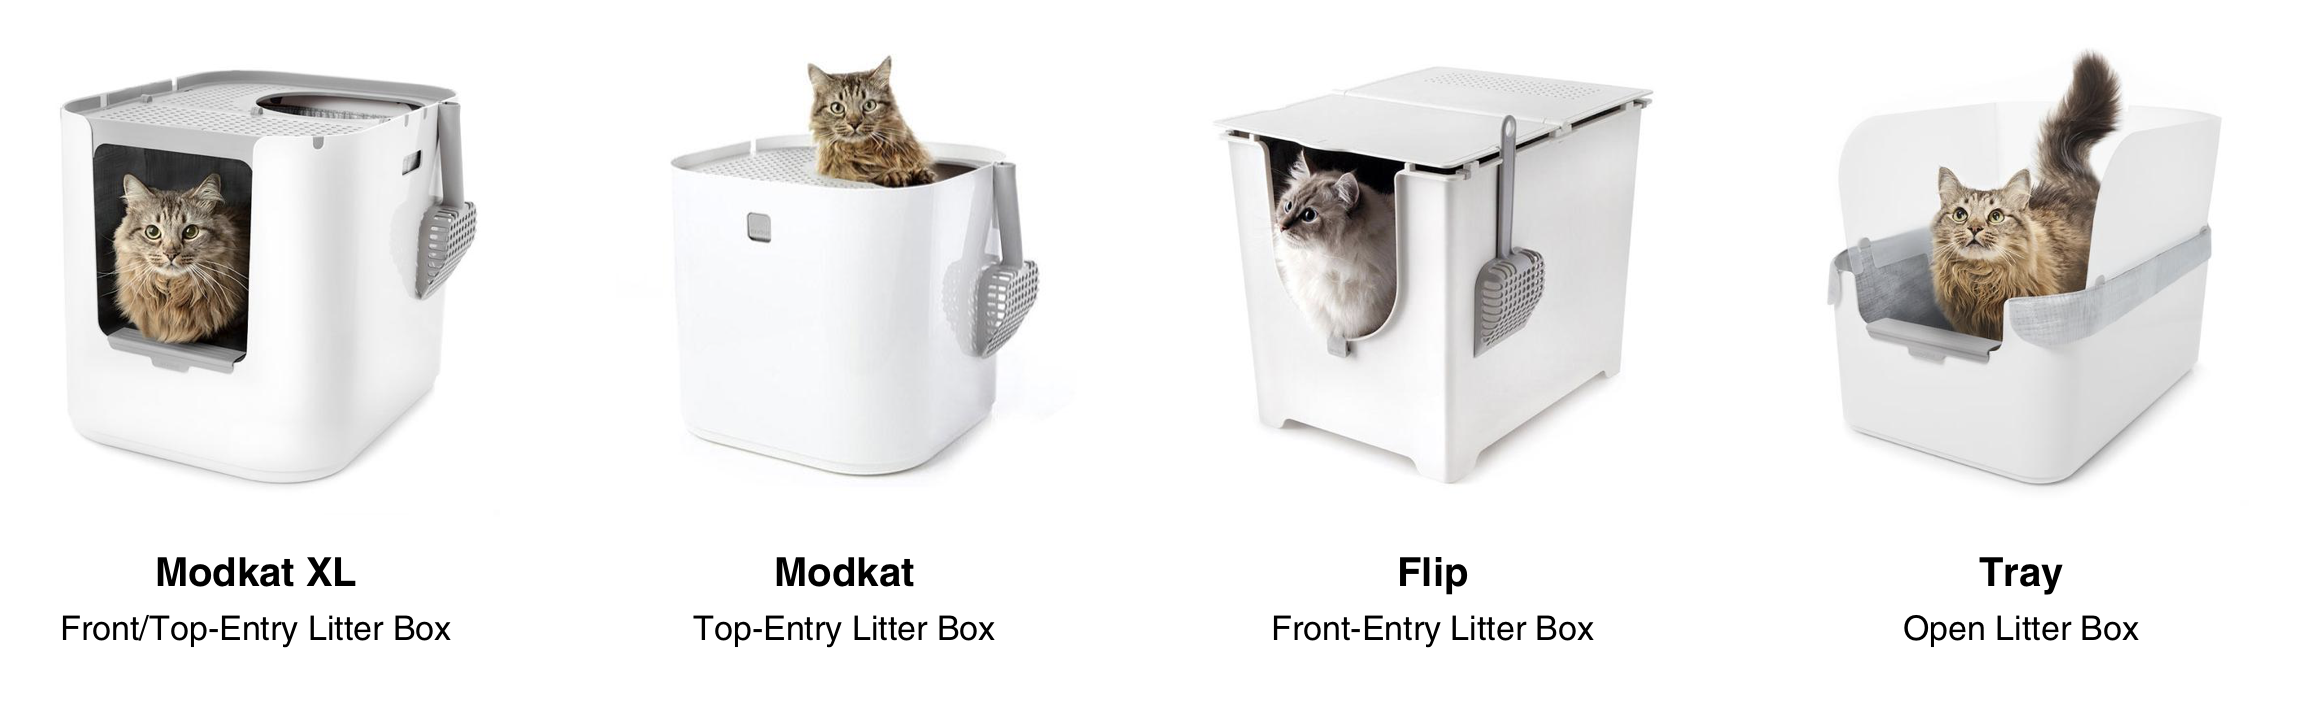 Modkat Modern Litter Boxes